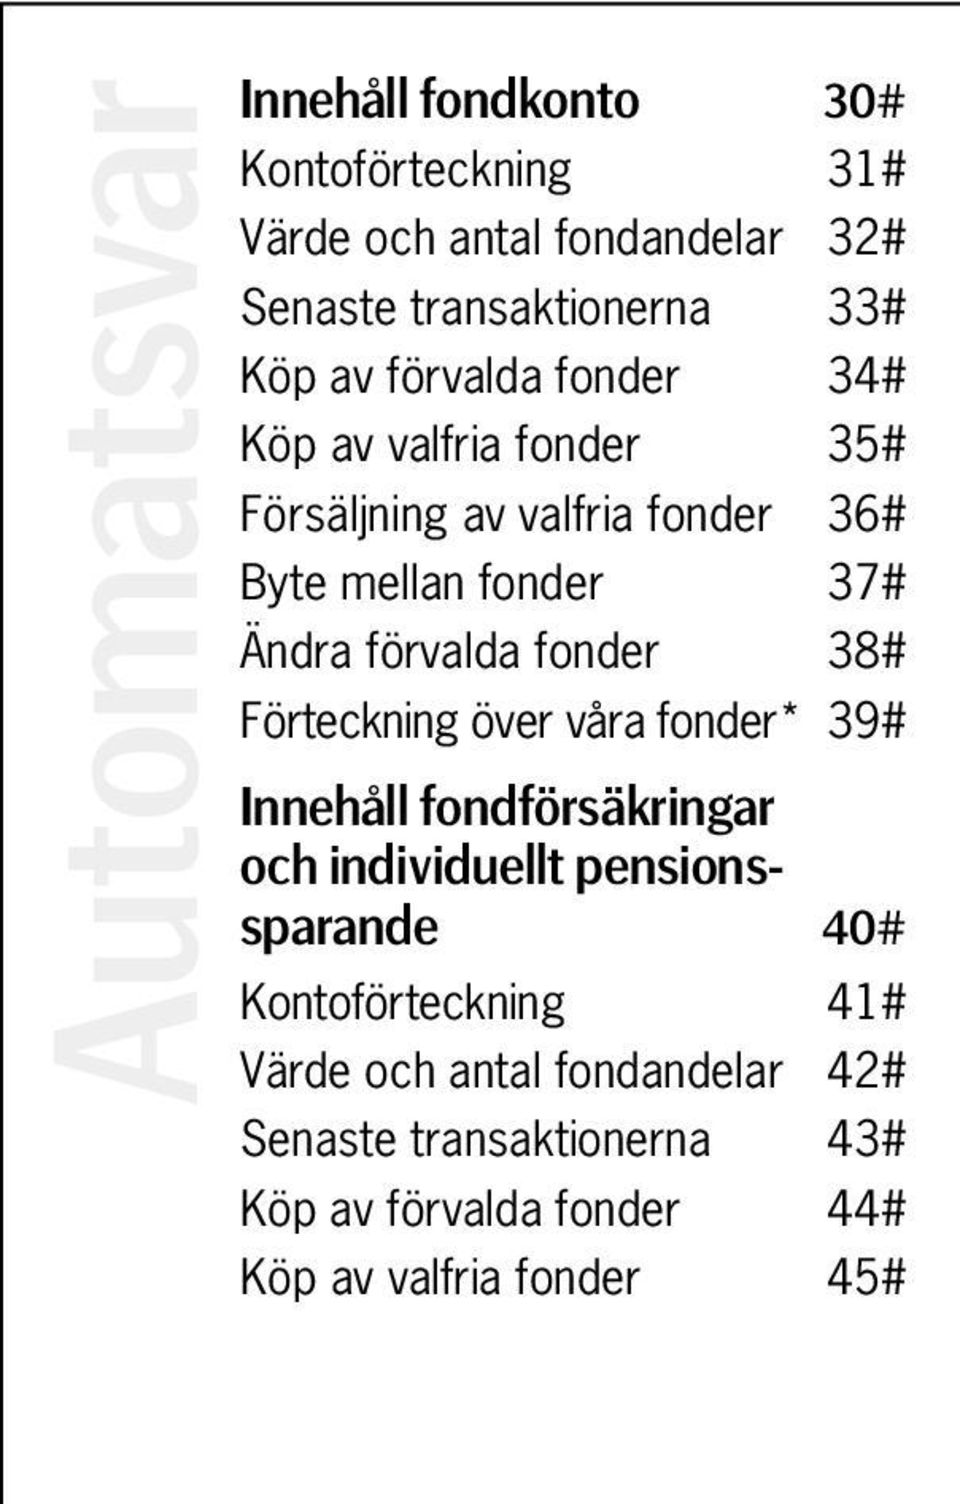 Förteckning över våra fonder* 39# Innehåll fondförsäkringar och individuellt pensionssparande 40# Kontoförteckning 41#